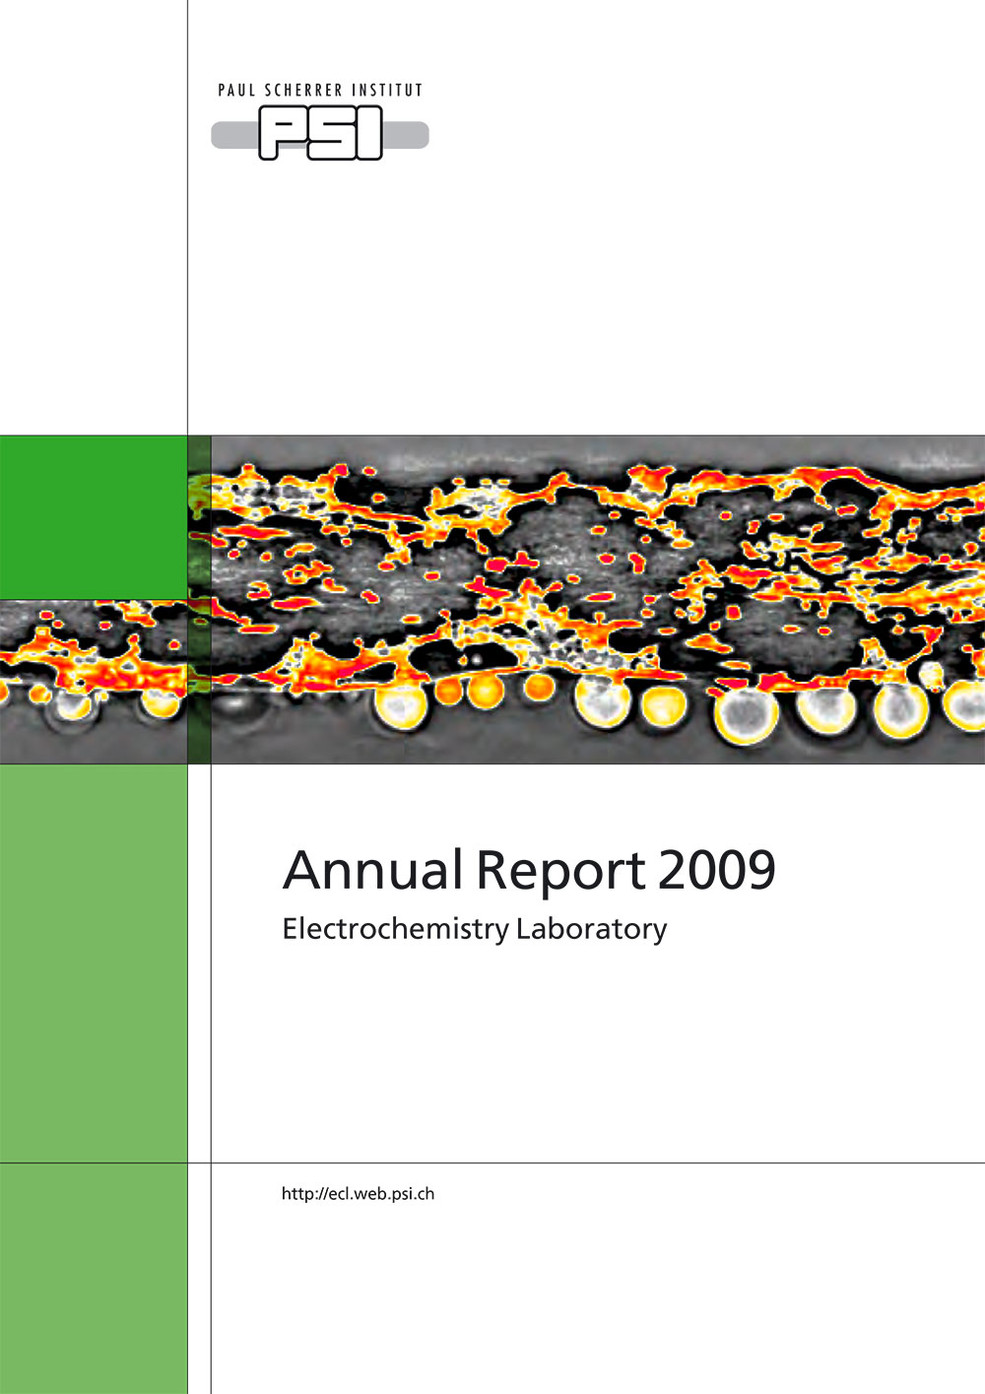 LEC annual report 2009